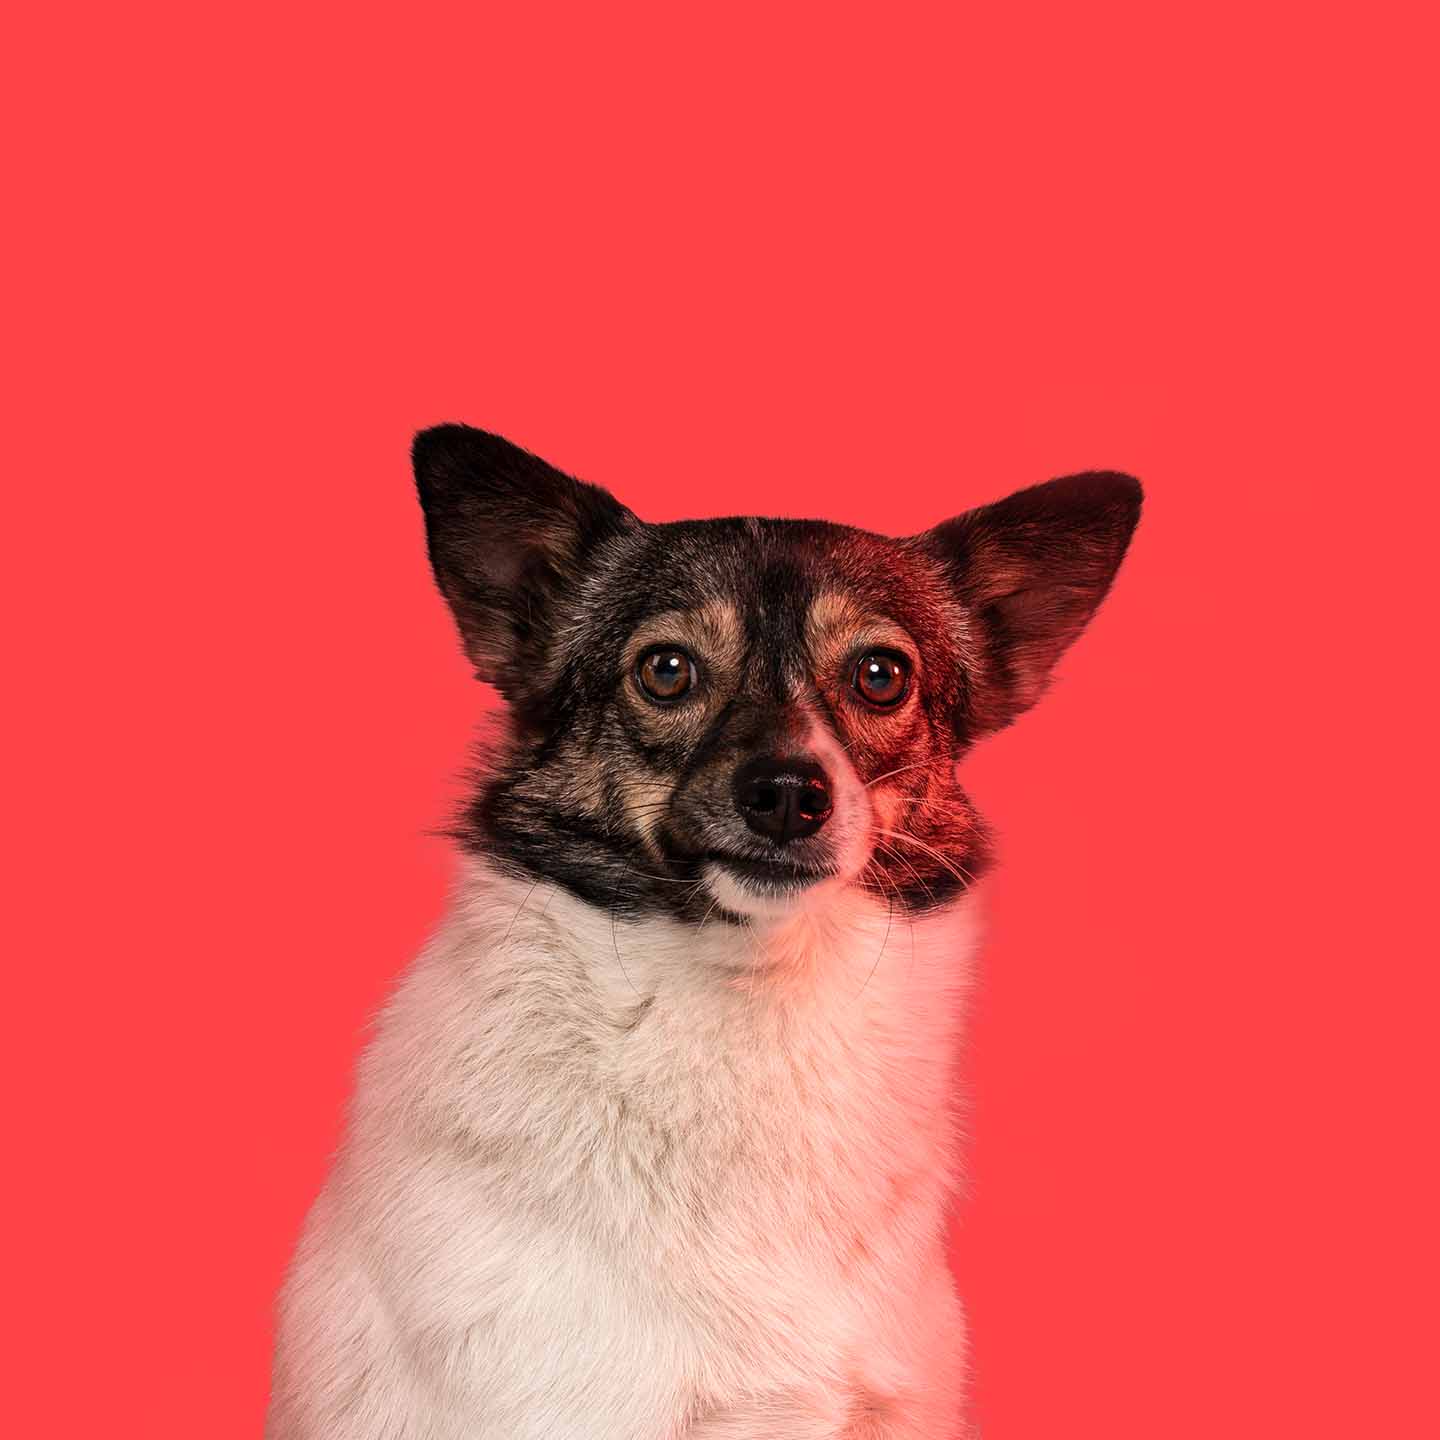 Aclewe Agenturhund Lilly vor rotem Hintergrund